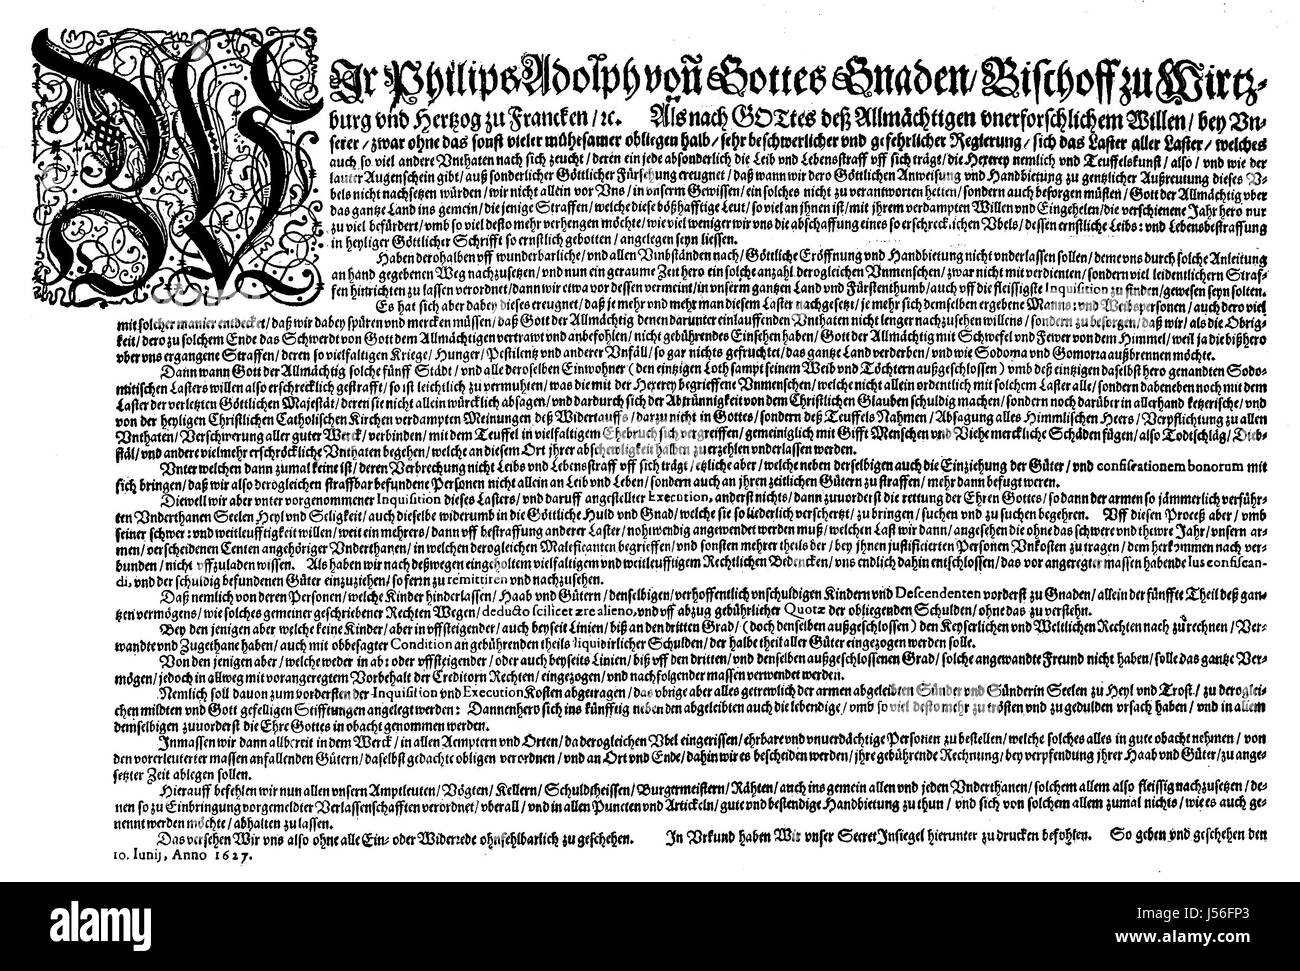 ein Hexen-Mandat verliehen von Bischof Philipp Adolf von Würzburg, Hexenmandat von Philipp Adolf, Bischof von Wuerzburg, 1627, Digital verbessert Reproduktion aus einer Publikation des Jahres 1880 Stockfoto